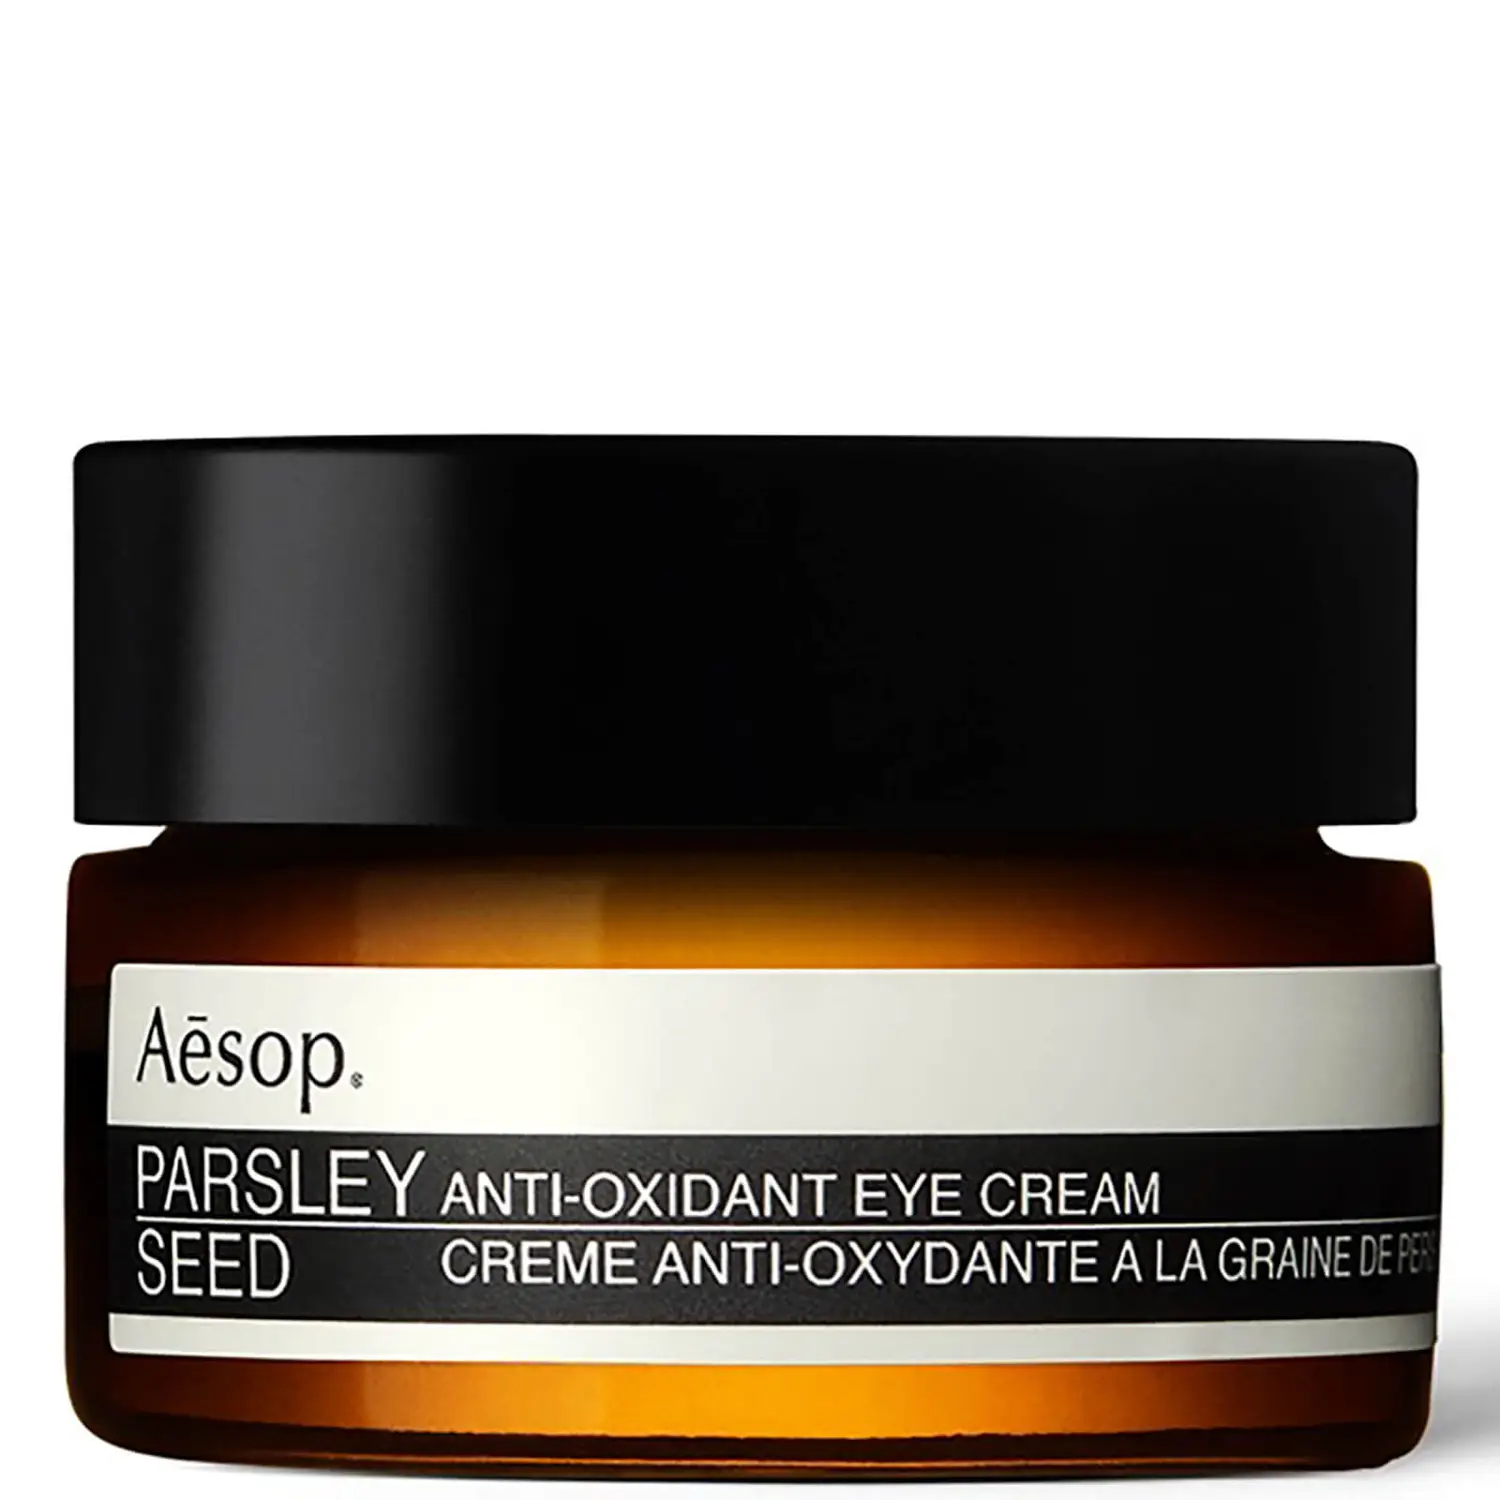 Parsley Seed Anti-Oxidant Eye Cream, Aesop